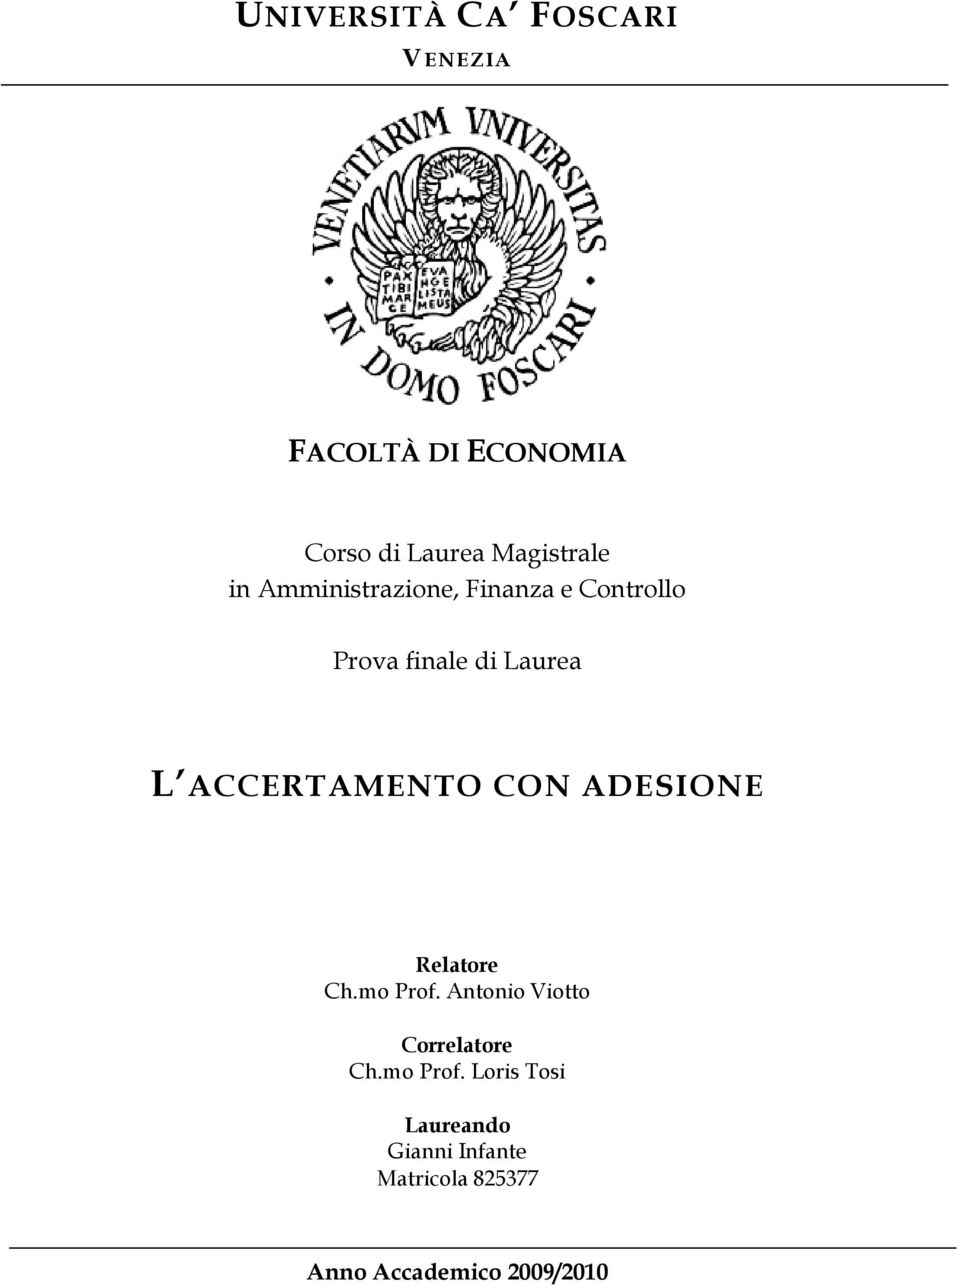 ACCERTAMENTO CON ADESIONE Relatore Ch.mo Prof. Antonio Viotto Correlatore Ch.